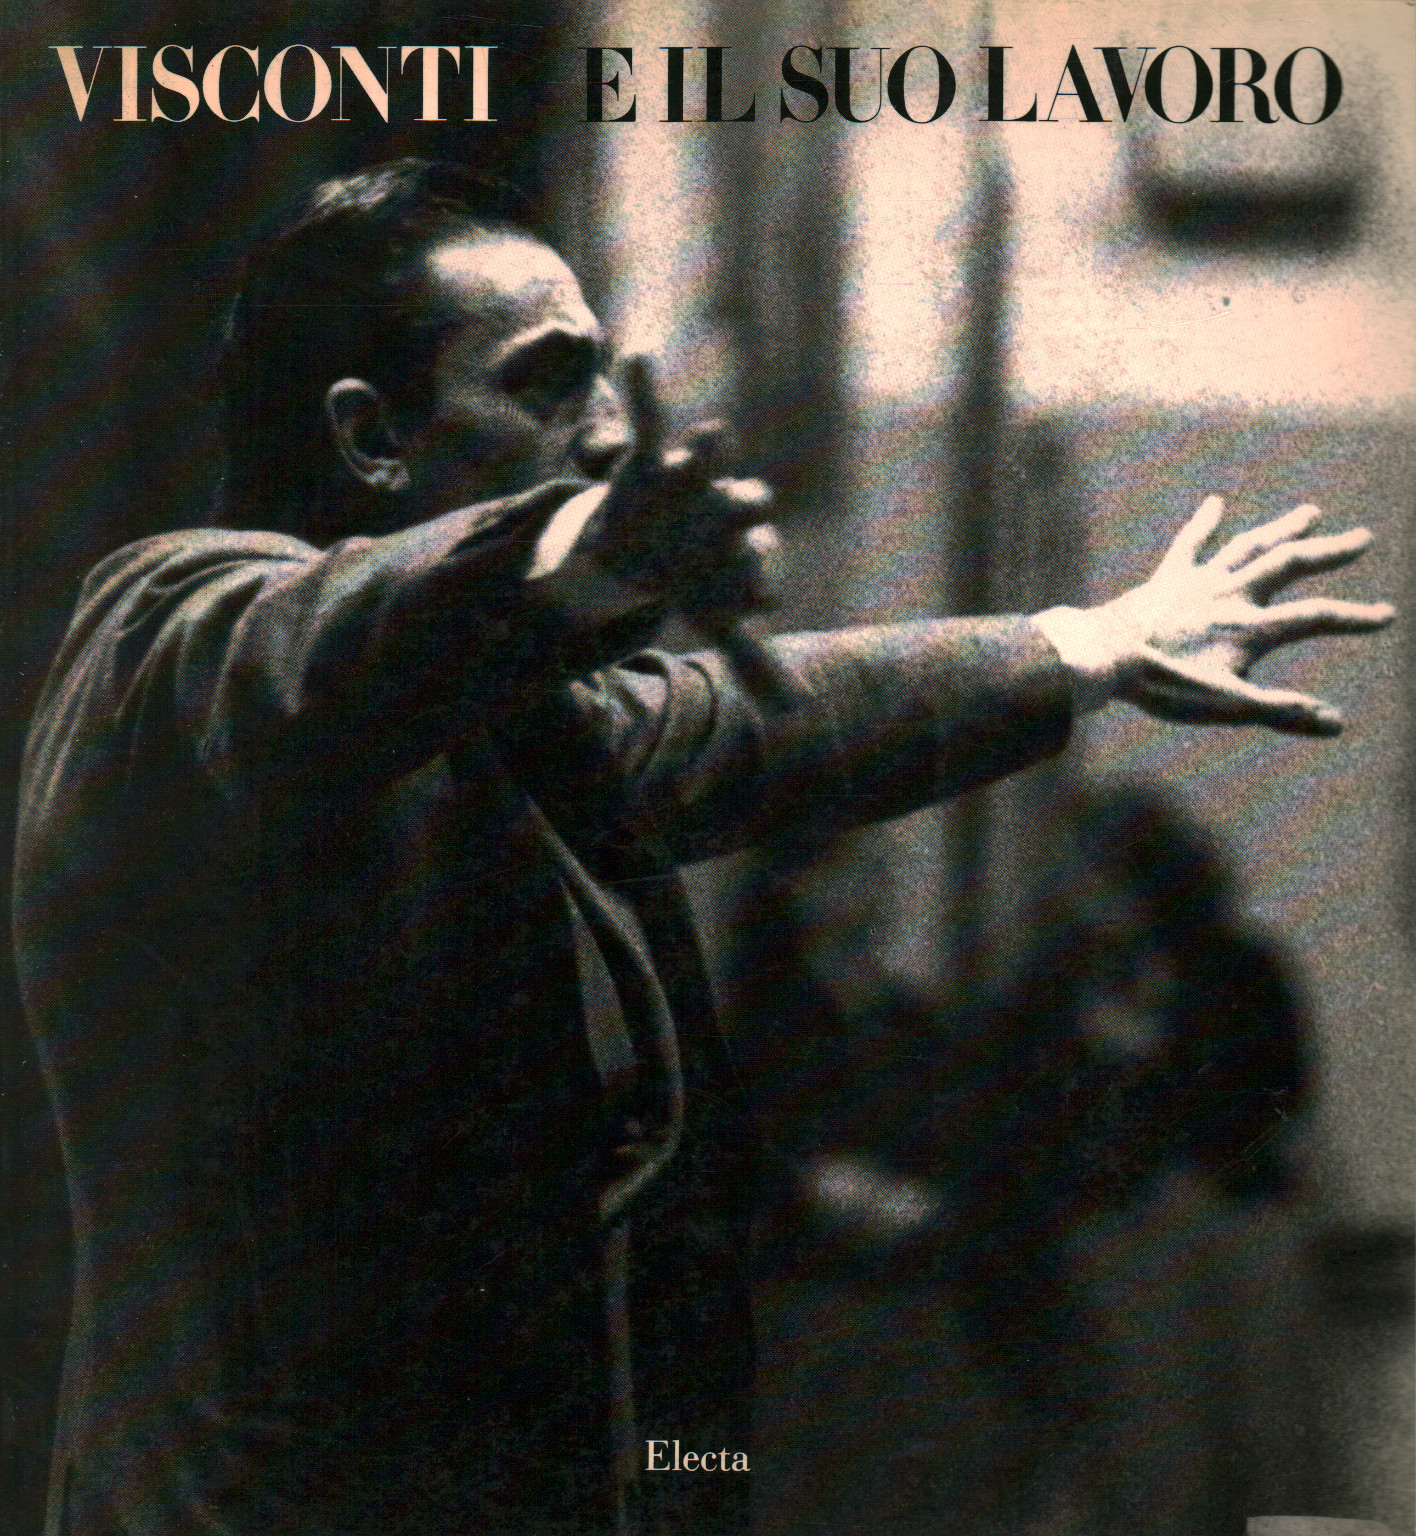 Visconti e il suo lavoro, s.a.